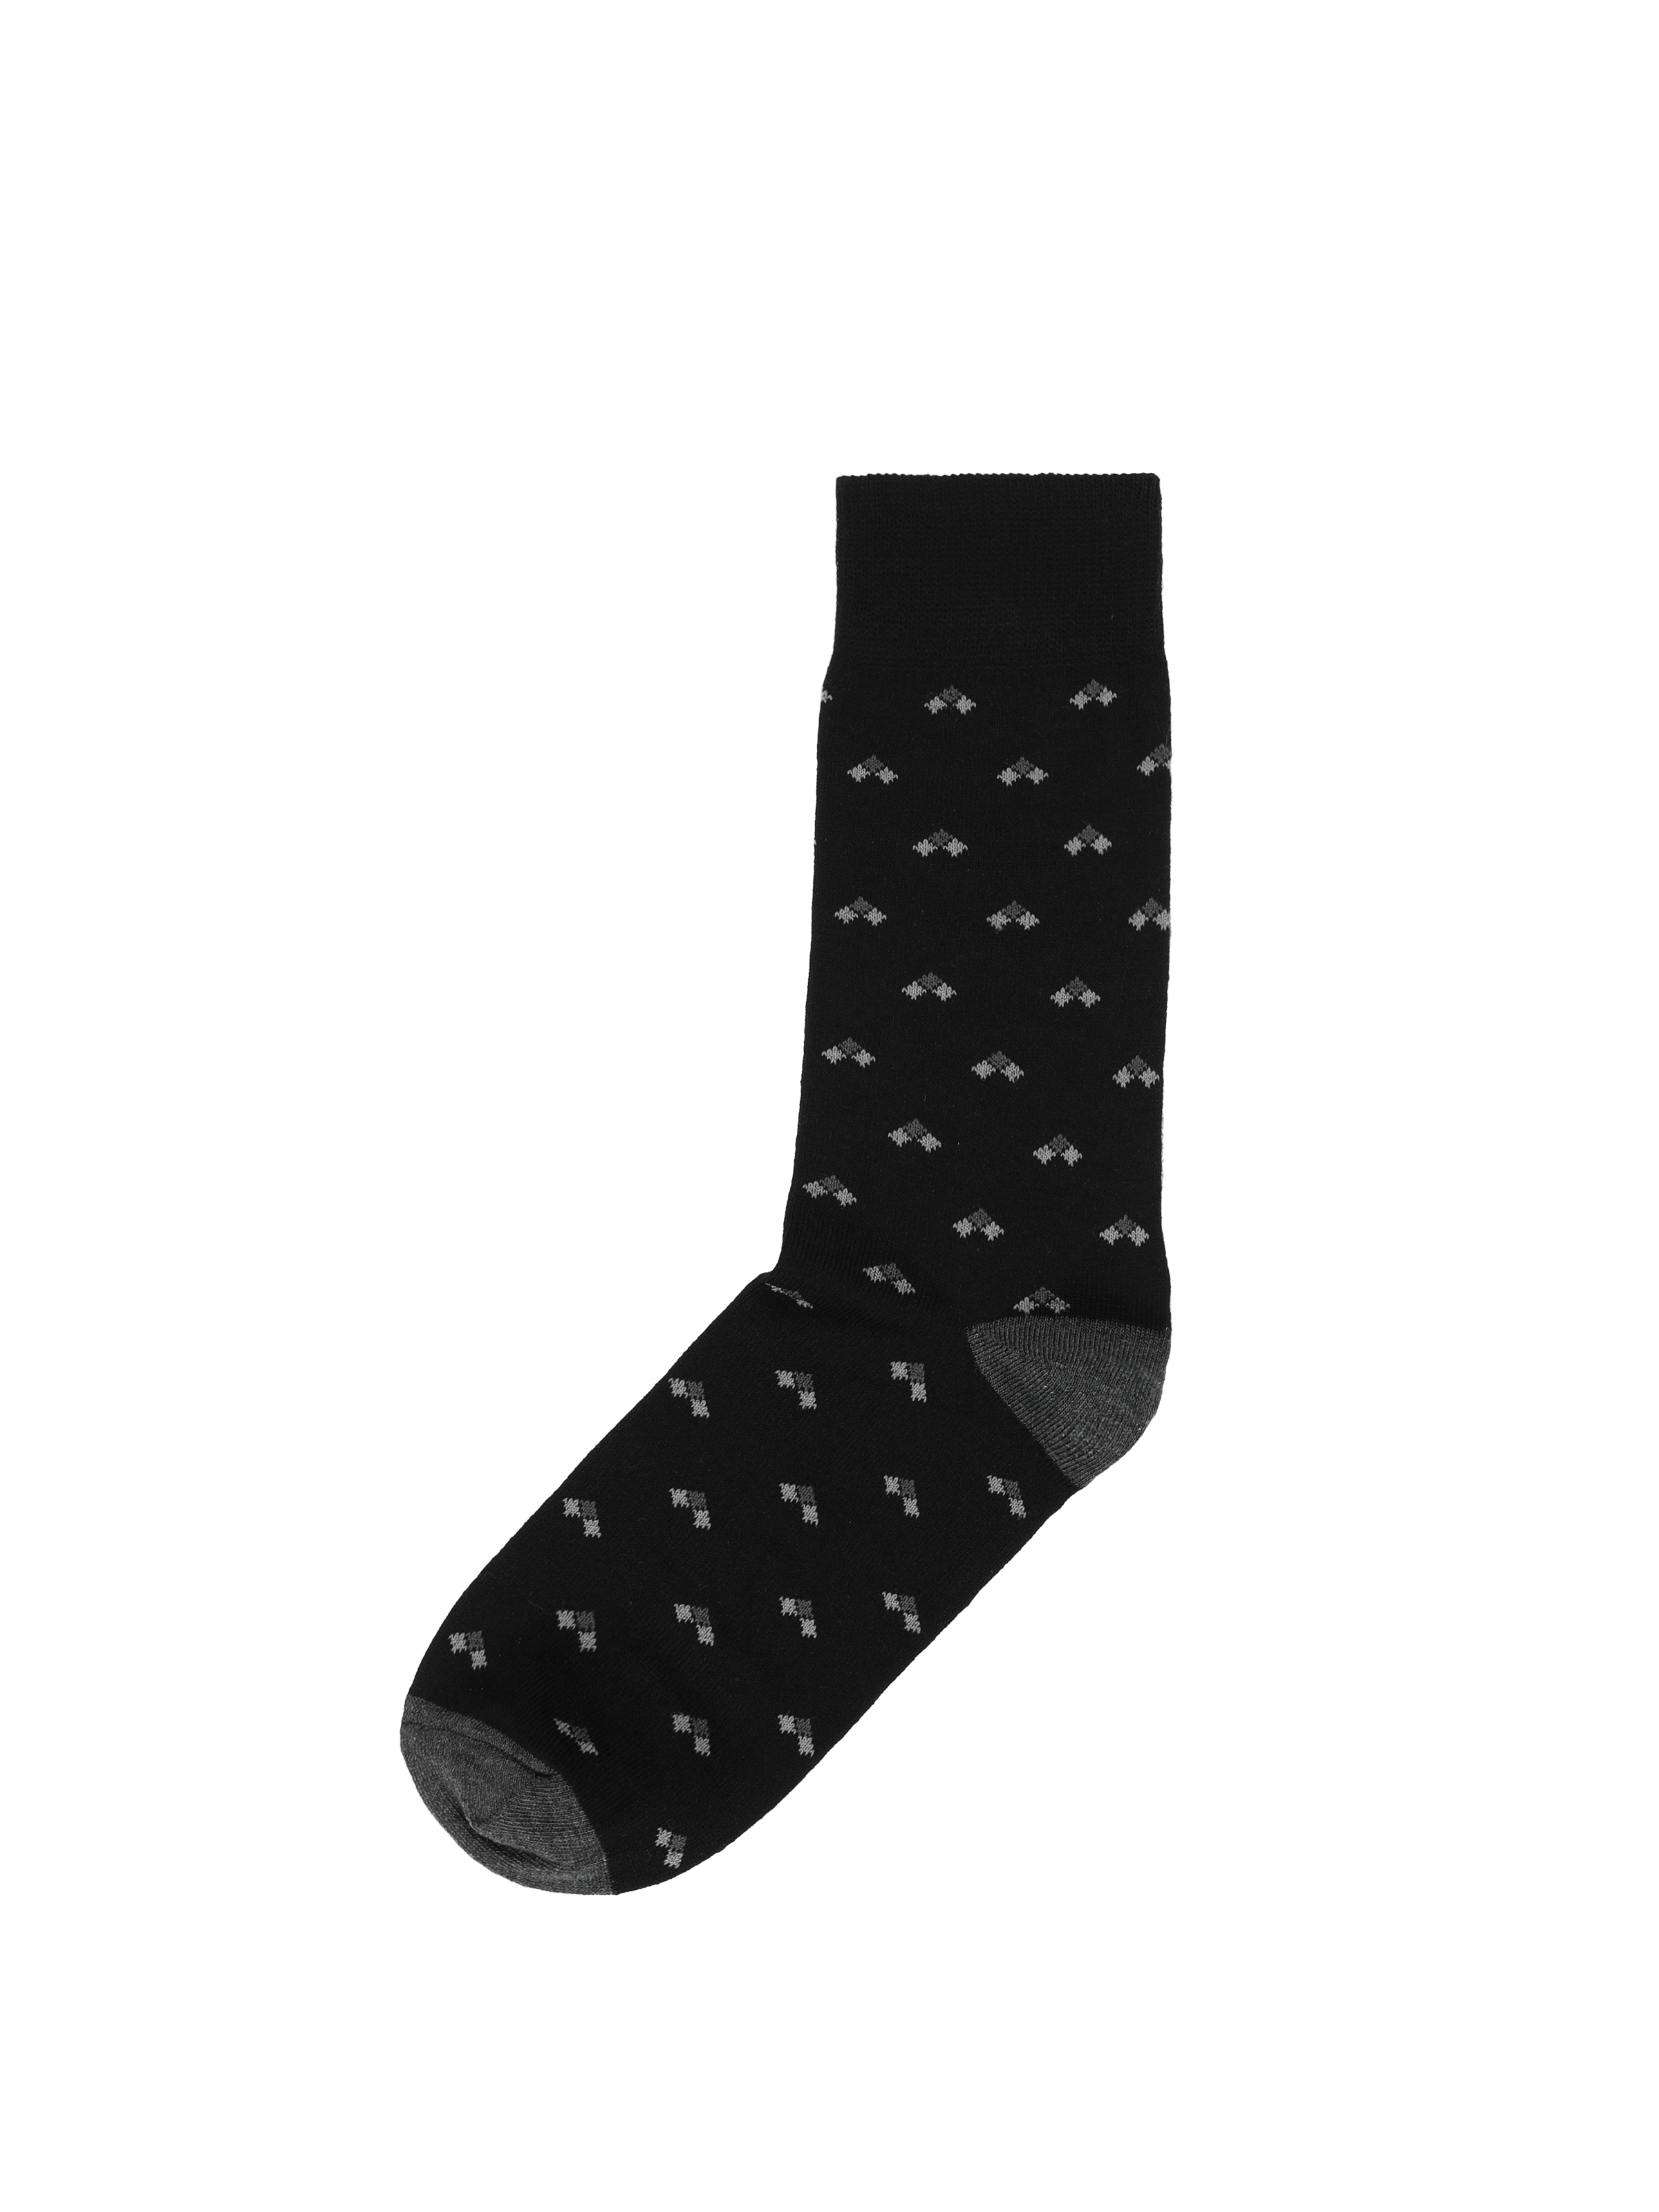 Показати інформацію про Шкарпетки Чоловічі Чорні З Принтом Cl1062128